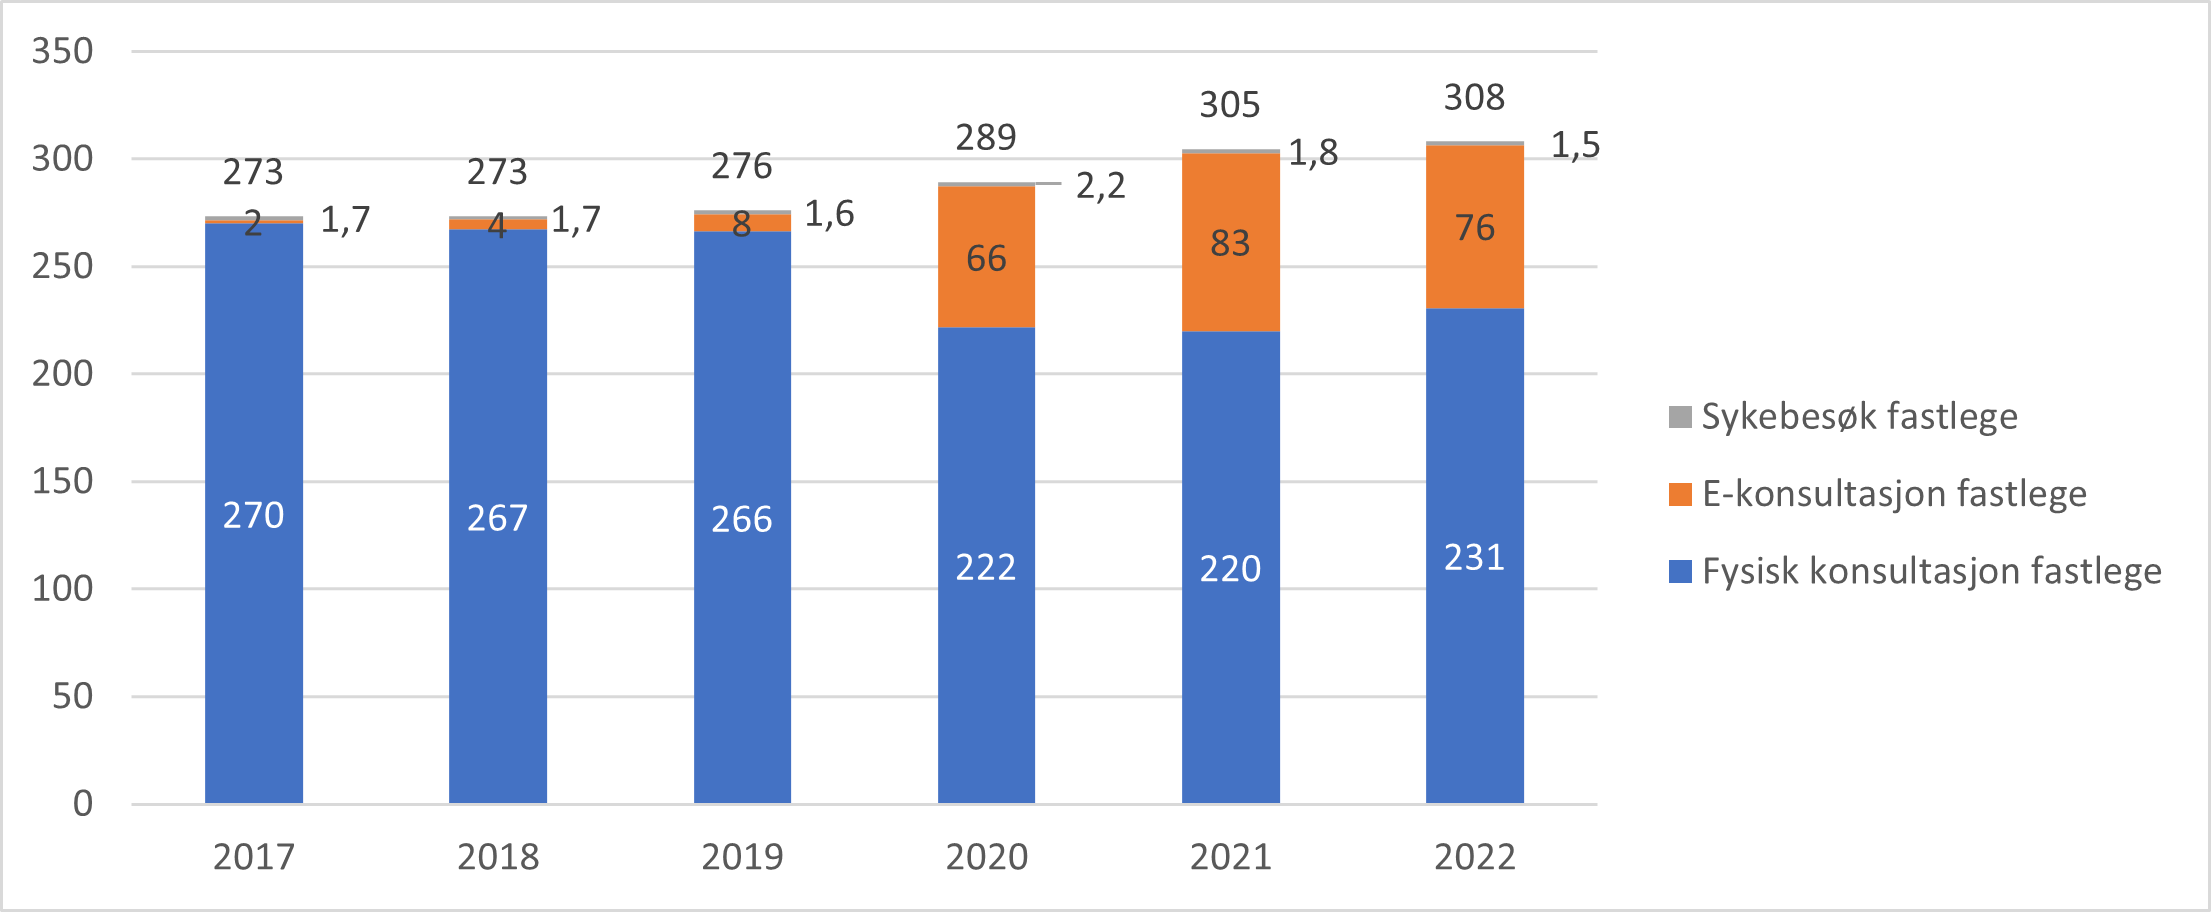 Antall konsultasjoner hos fastlege inkludert sykebesøk per 100 innbygger, 2017 til 2022.